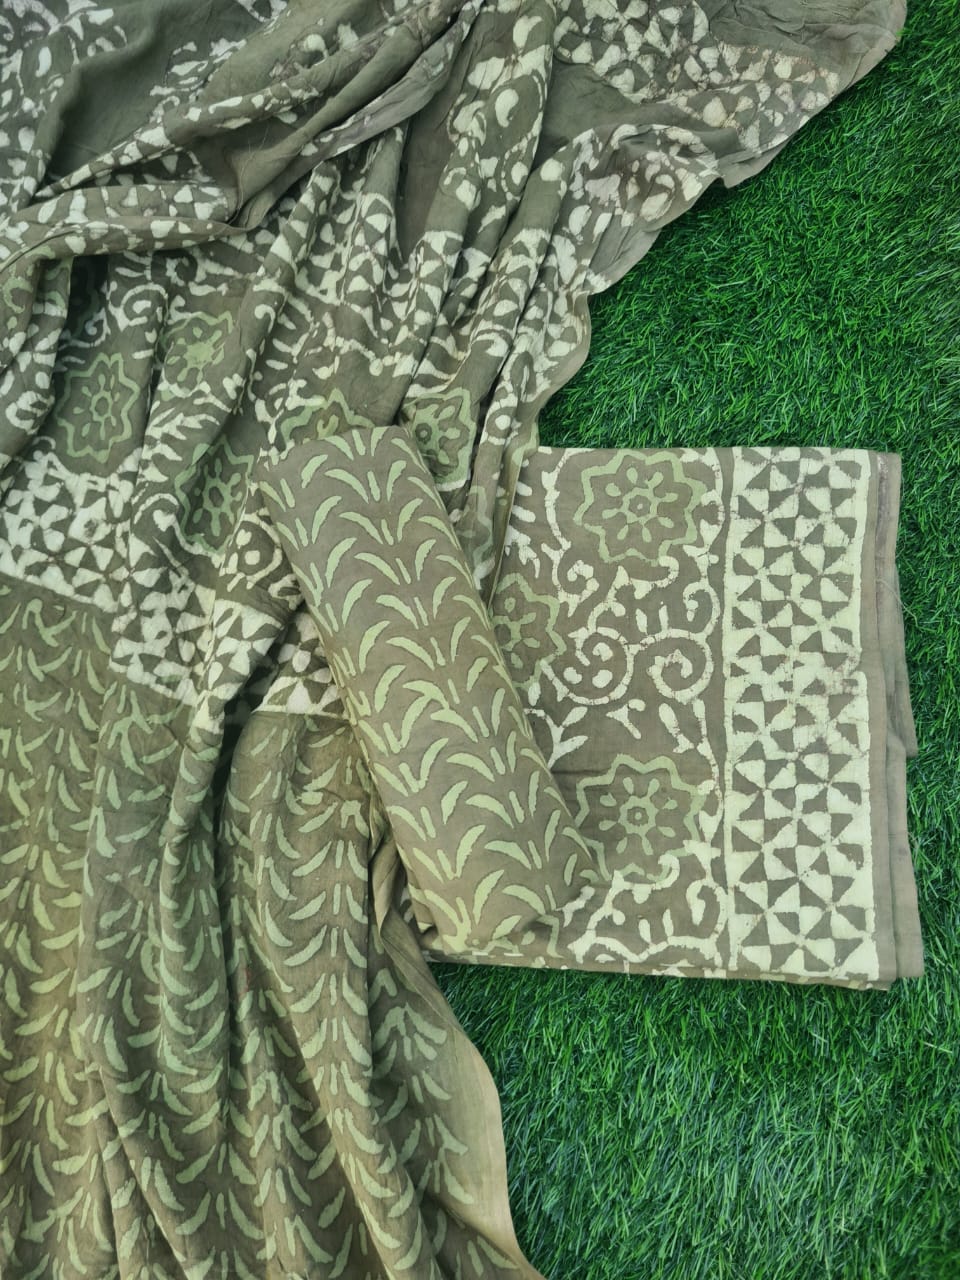 Hand- Block Print pure cotton unstitched suit with mul cotton dupatta